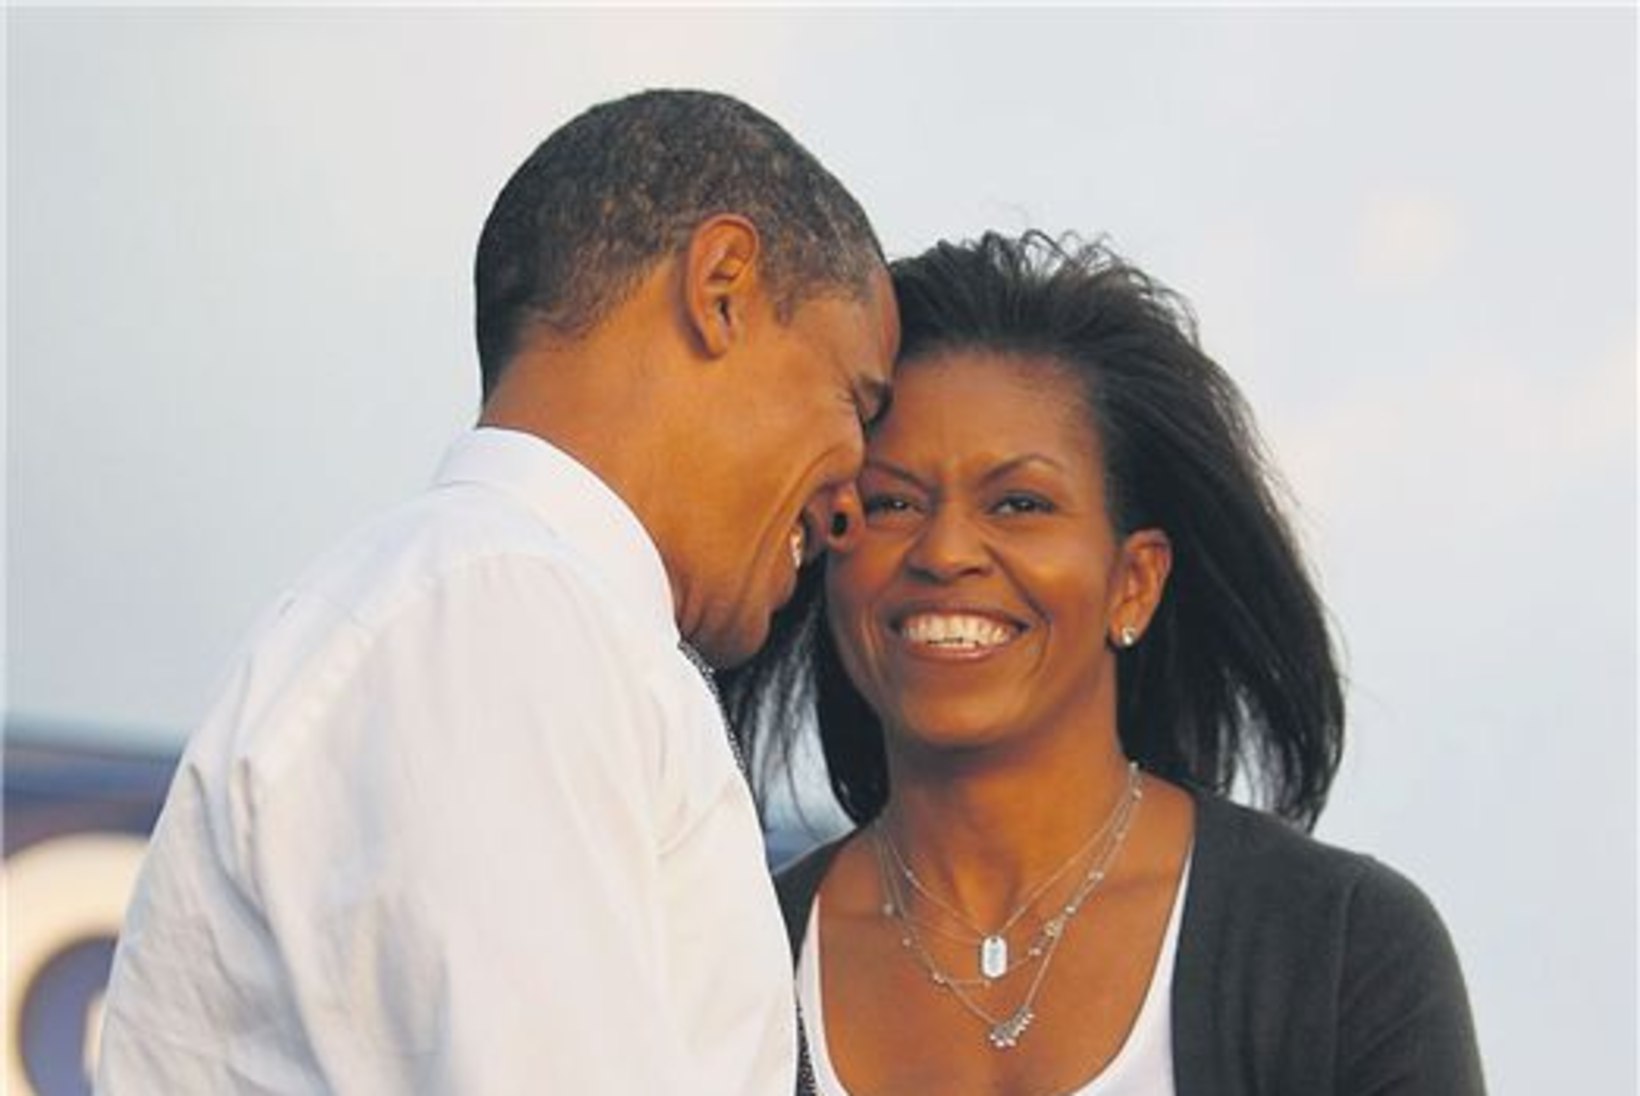 Kas esileedi Michelle Obama häbeneb krässus juukseid?